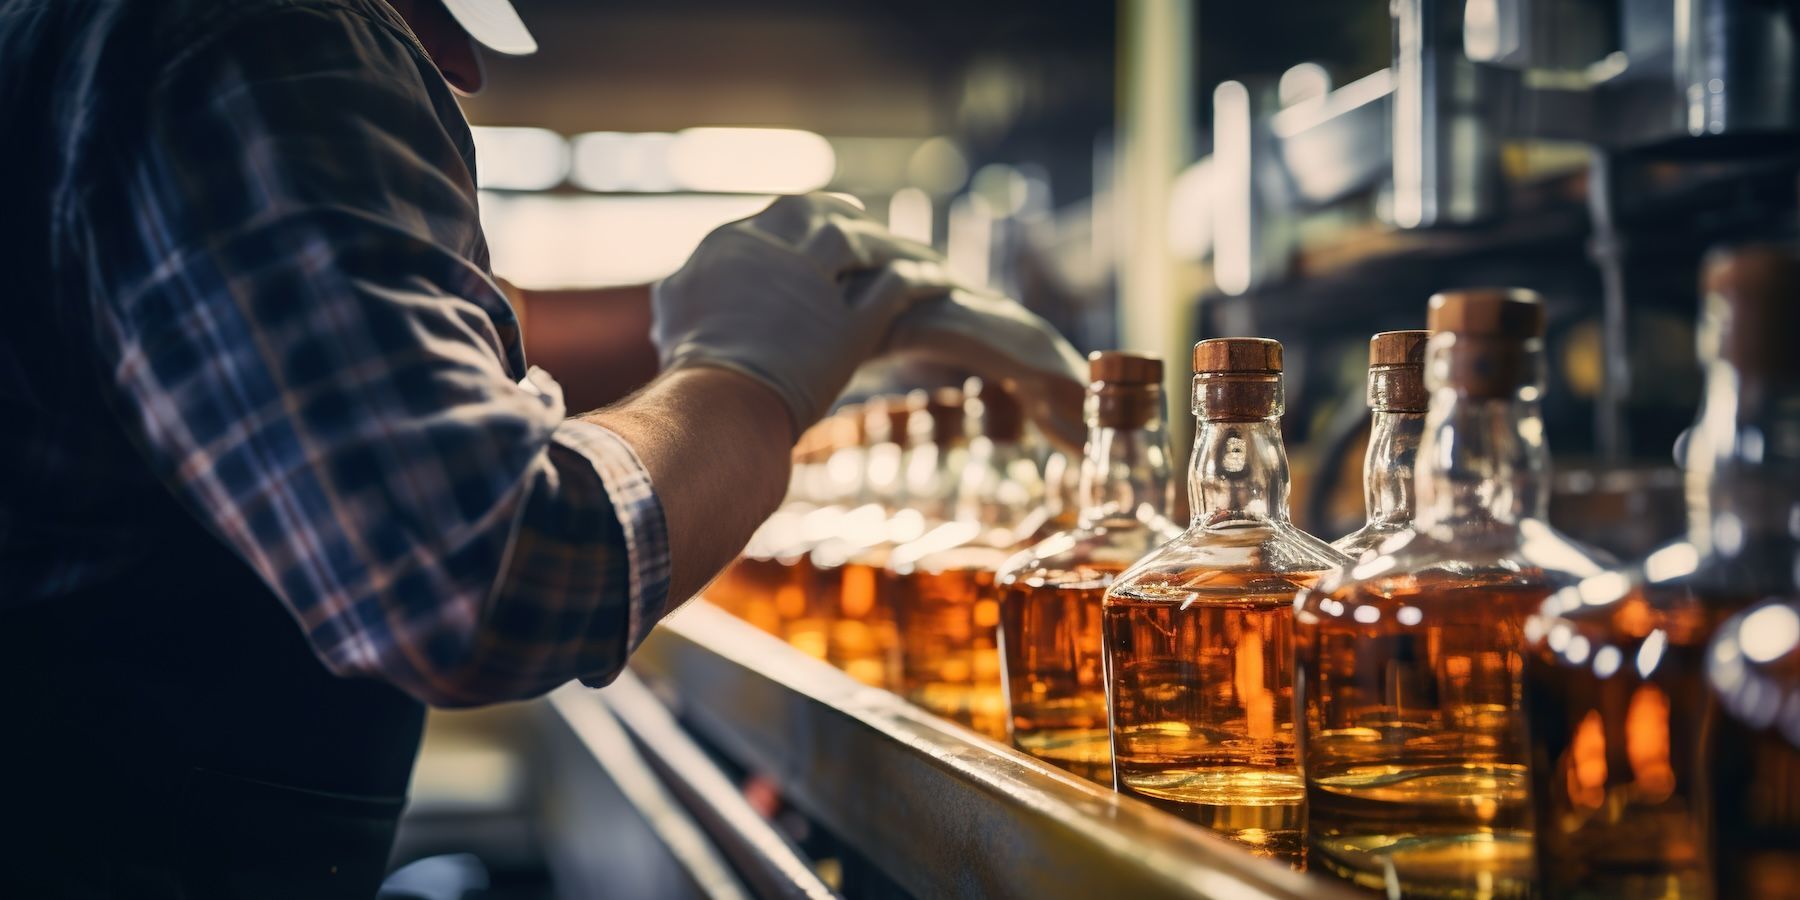 Man working on whiskey bottling line